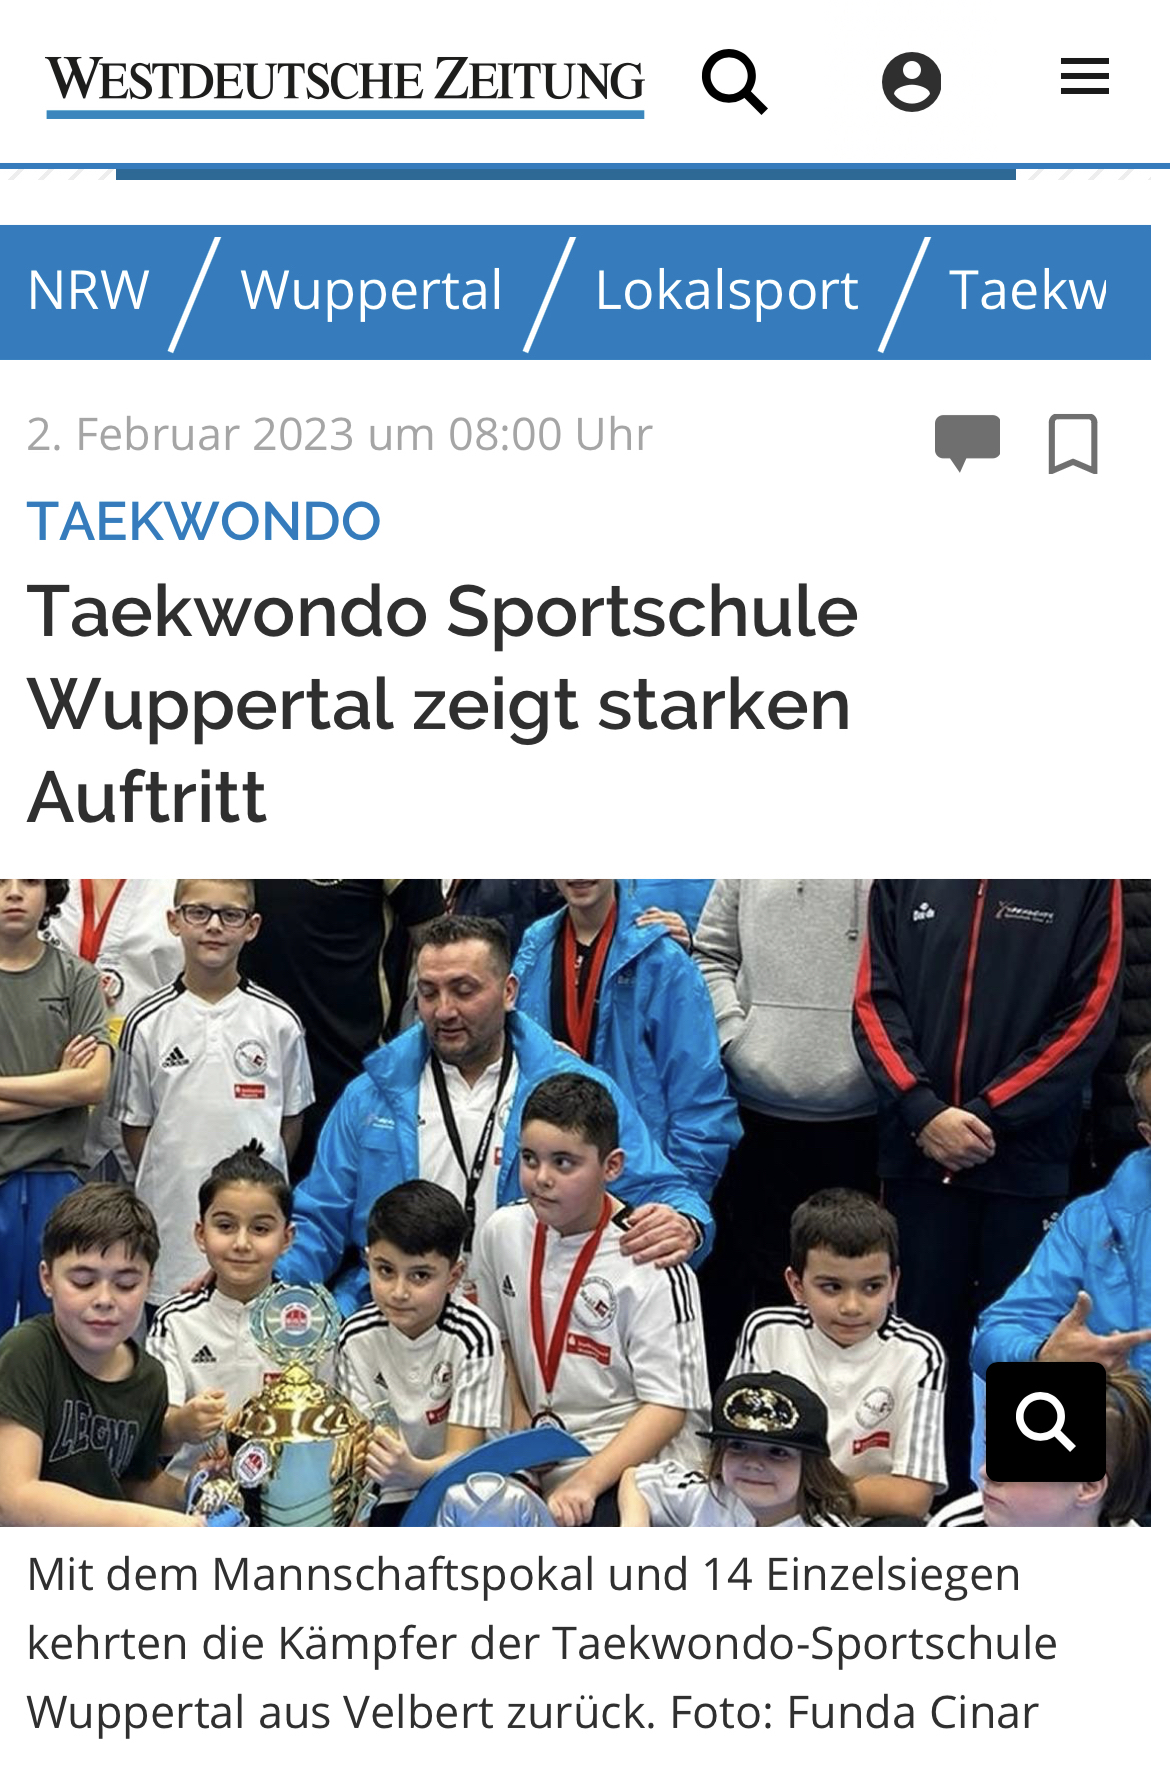 Der beste Nachwuchs aus Wuppertal!  Die Taekwondo-Sportschule Cinar e.V. 